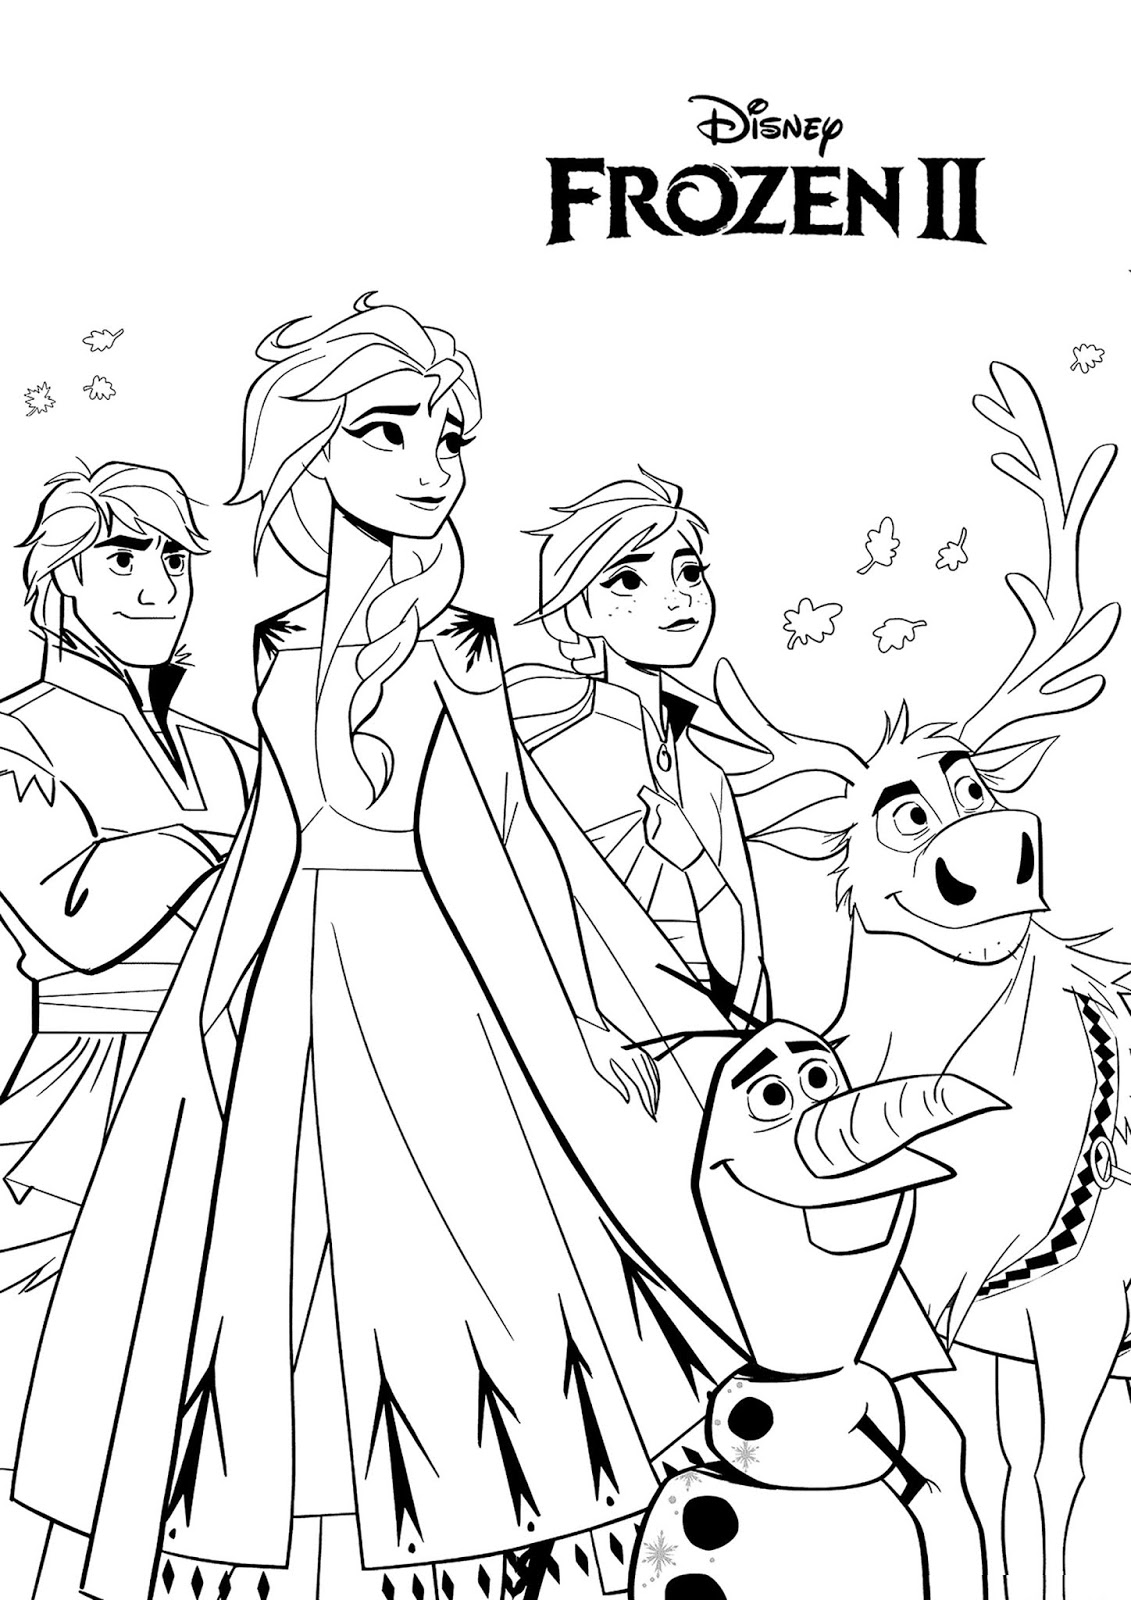 Tranh tô màu công chúa Elsa, Anna cùng những người bạn